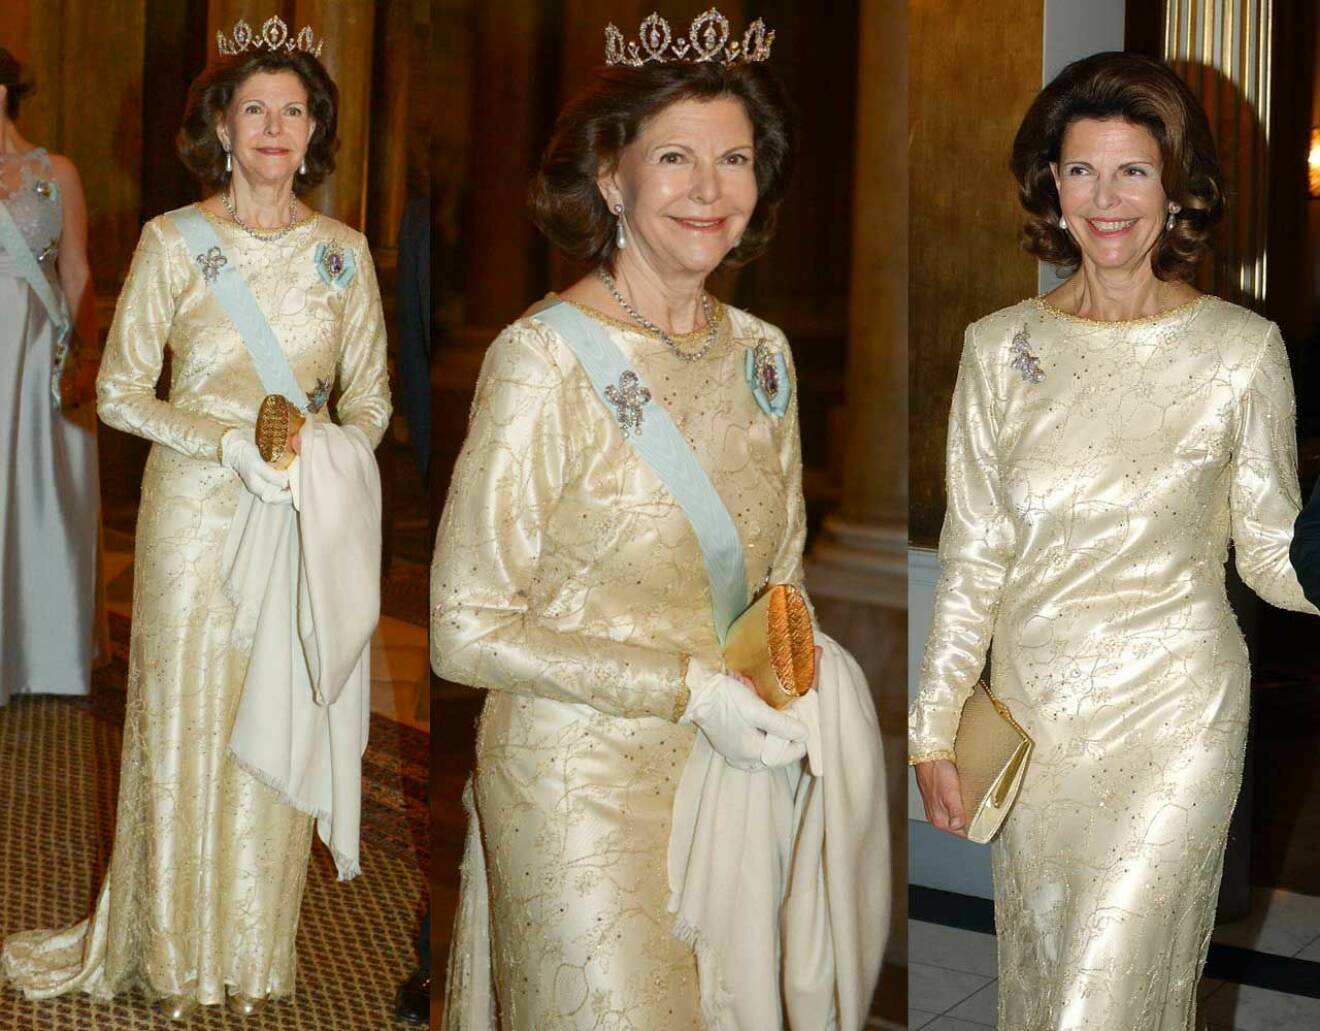 Drottning Silvia i sin guldklänning, en favorit i repris från år 2003.